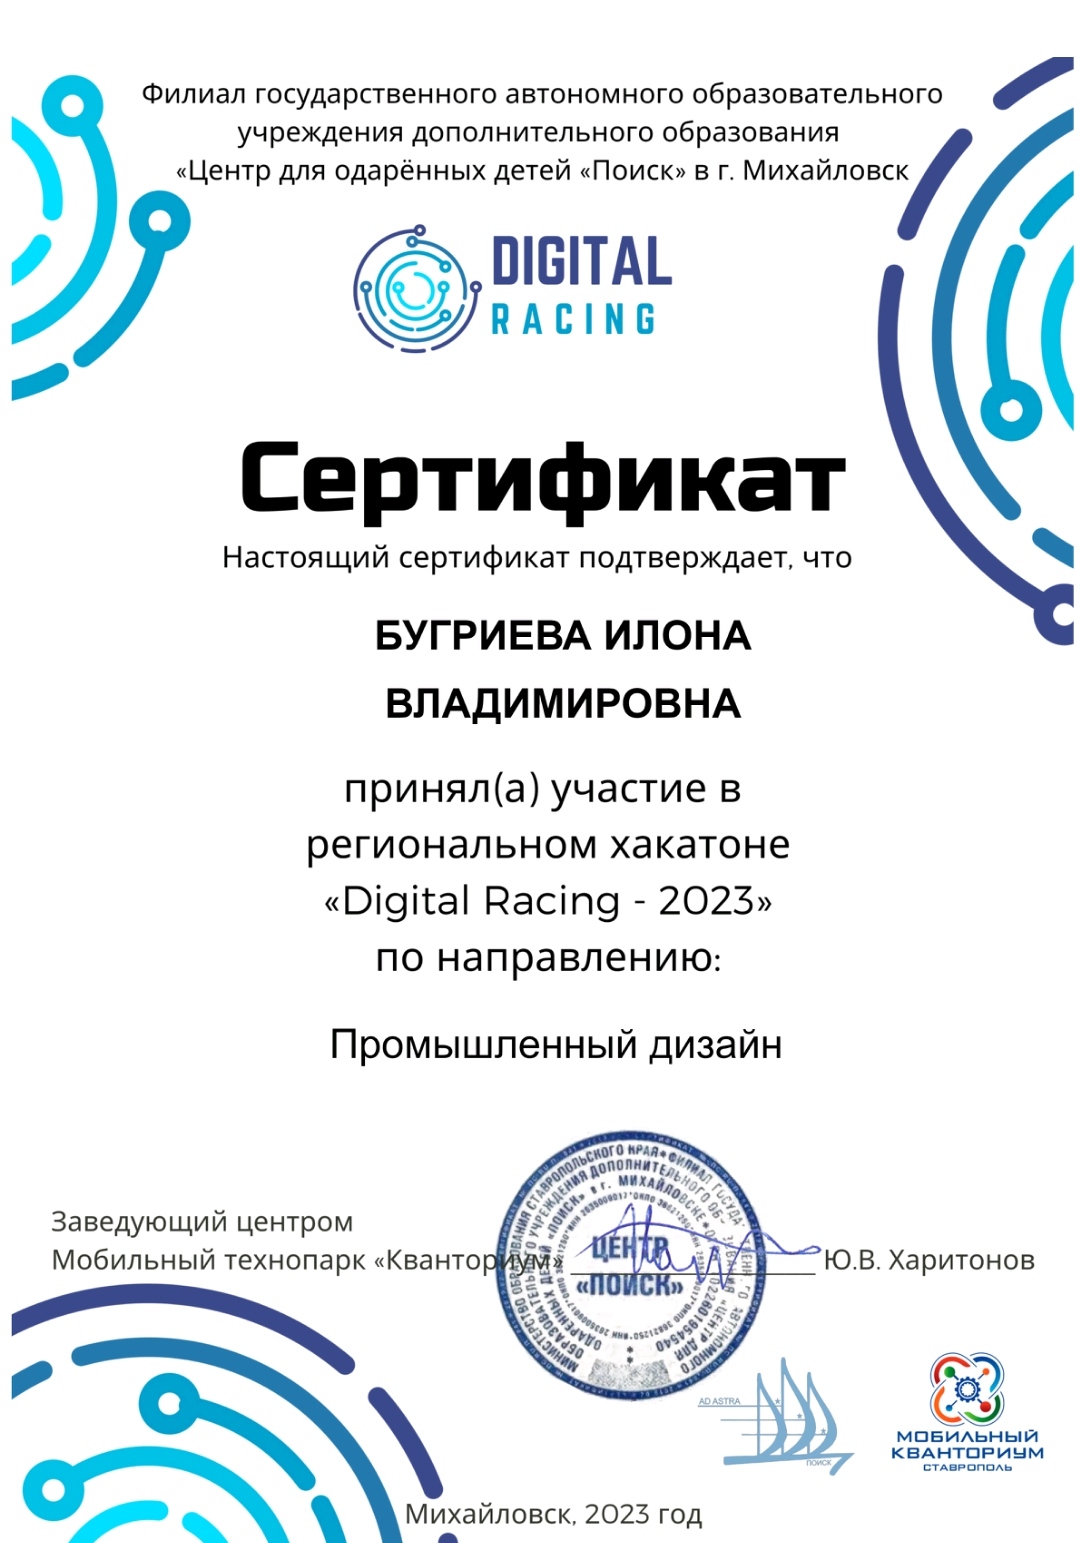 Региональный хакатон &amp;quot;Digital Racing - 2023&amp;quot;.